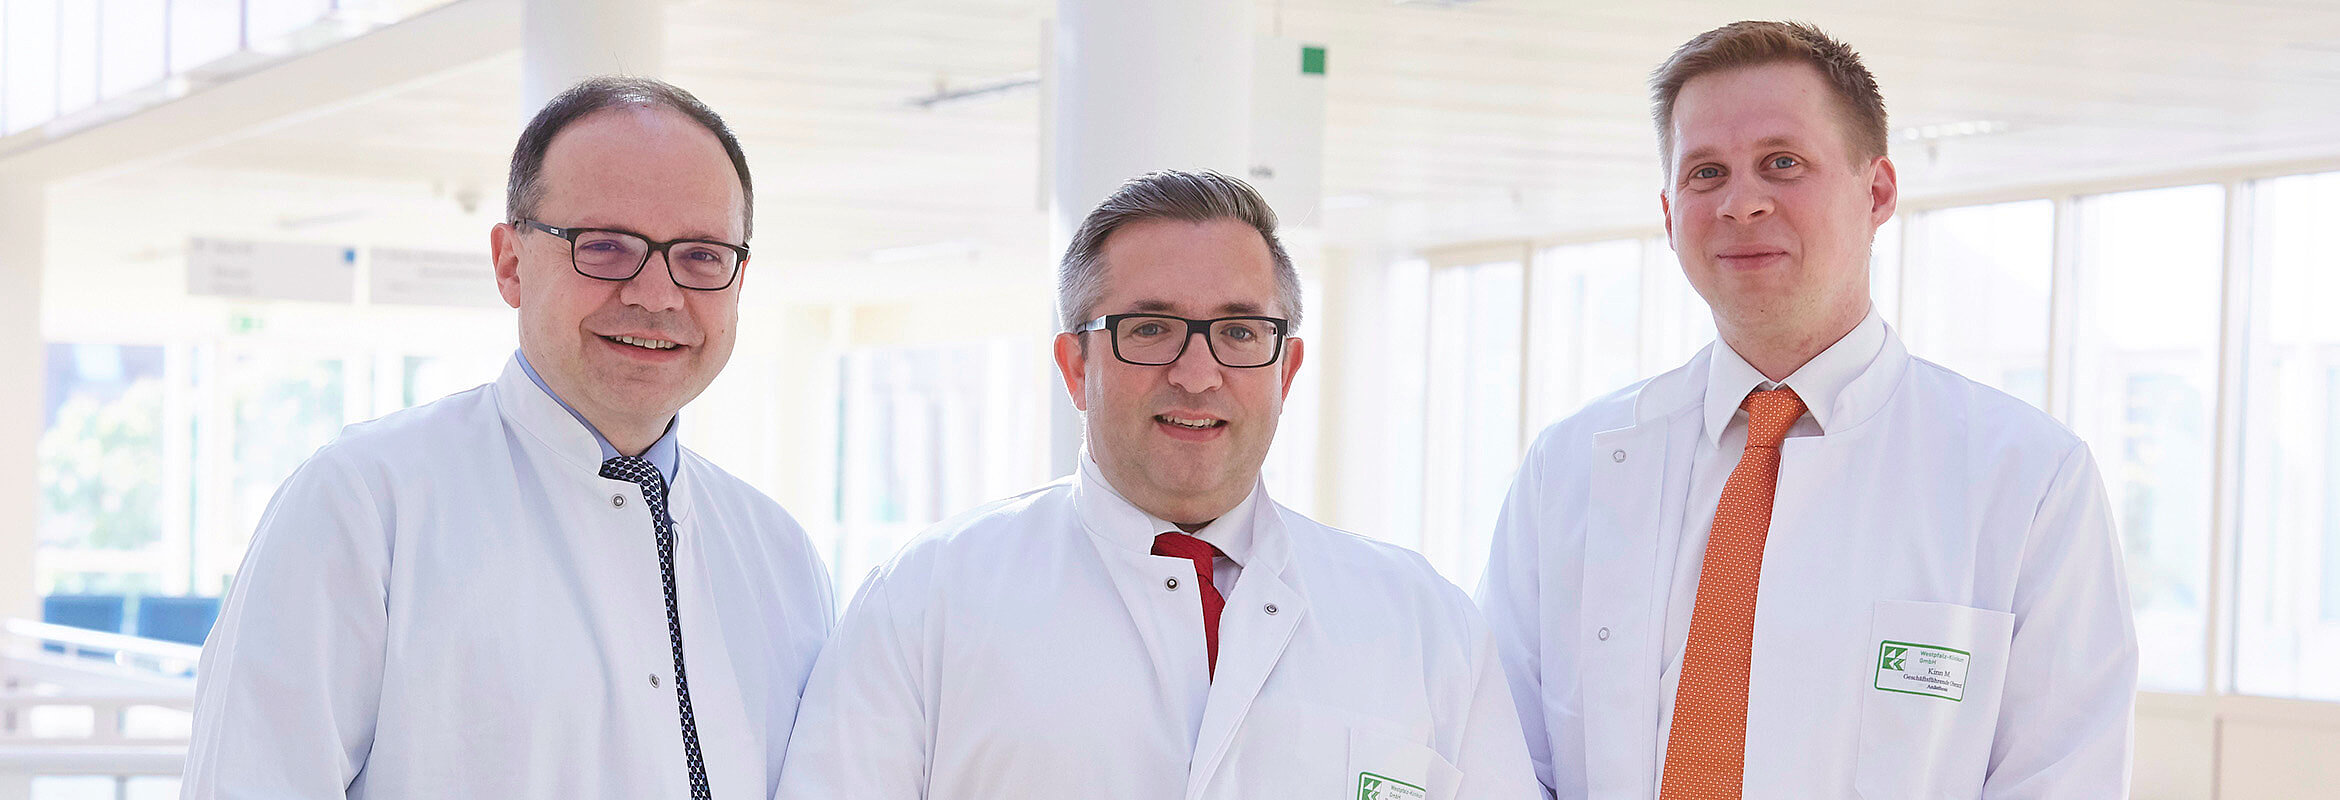 Dr. med. Bodo Pichler, Prof. Dr. med. Stefan Hofer und Michael Kinn, Ärzte der Klinik für Anästhesie, Intensiv-, Notfallmedizin und Schmerztherapie in Kaiserslautern